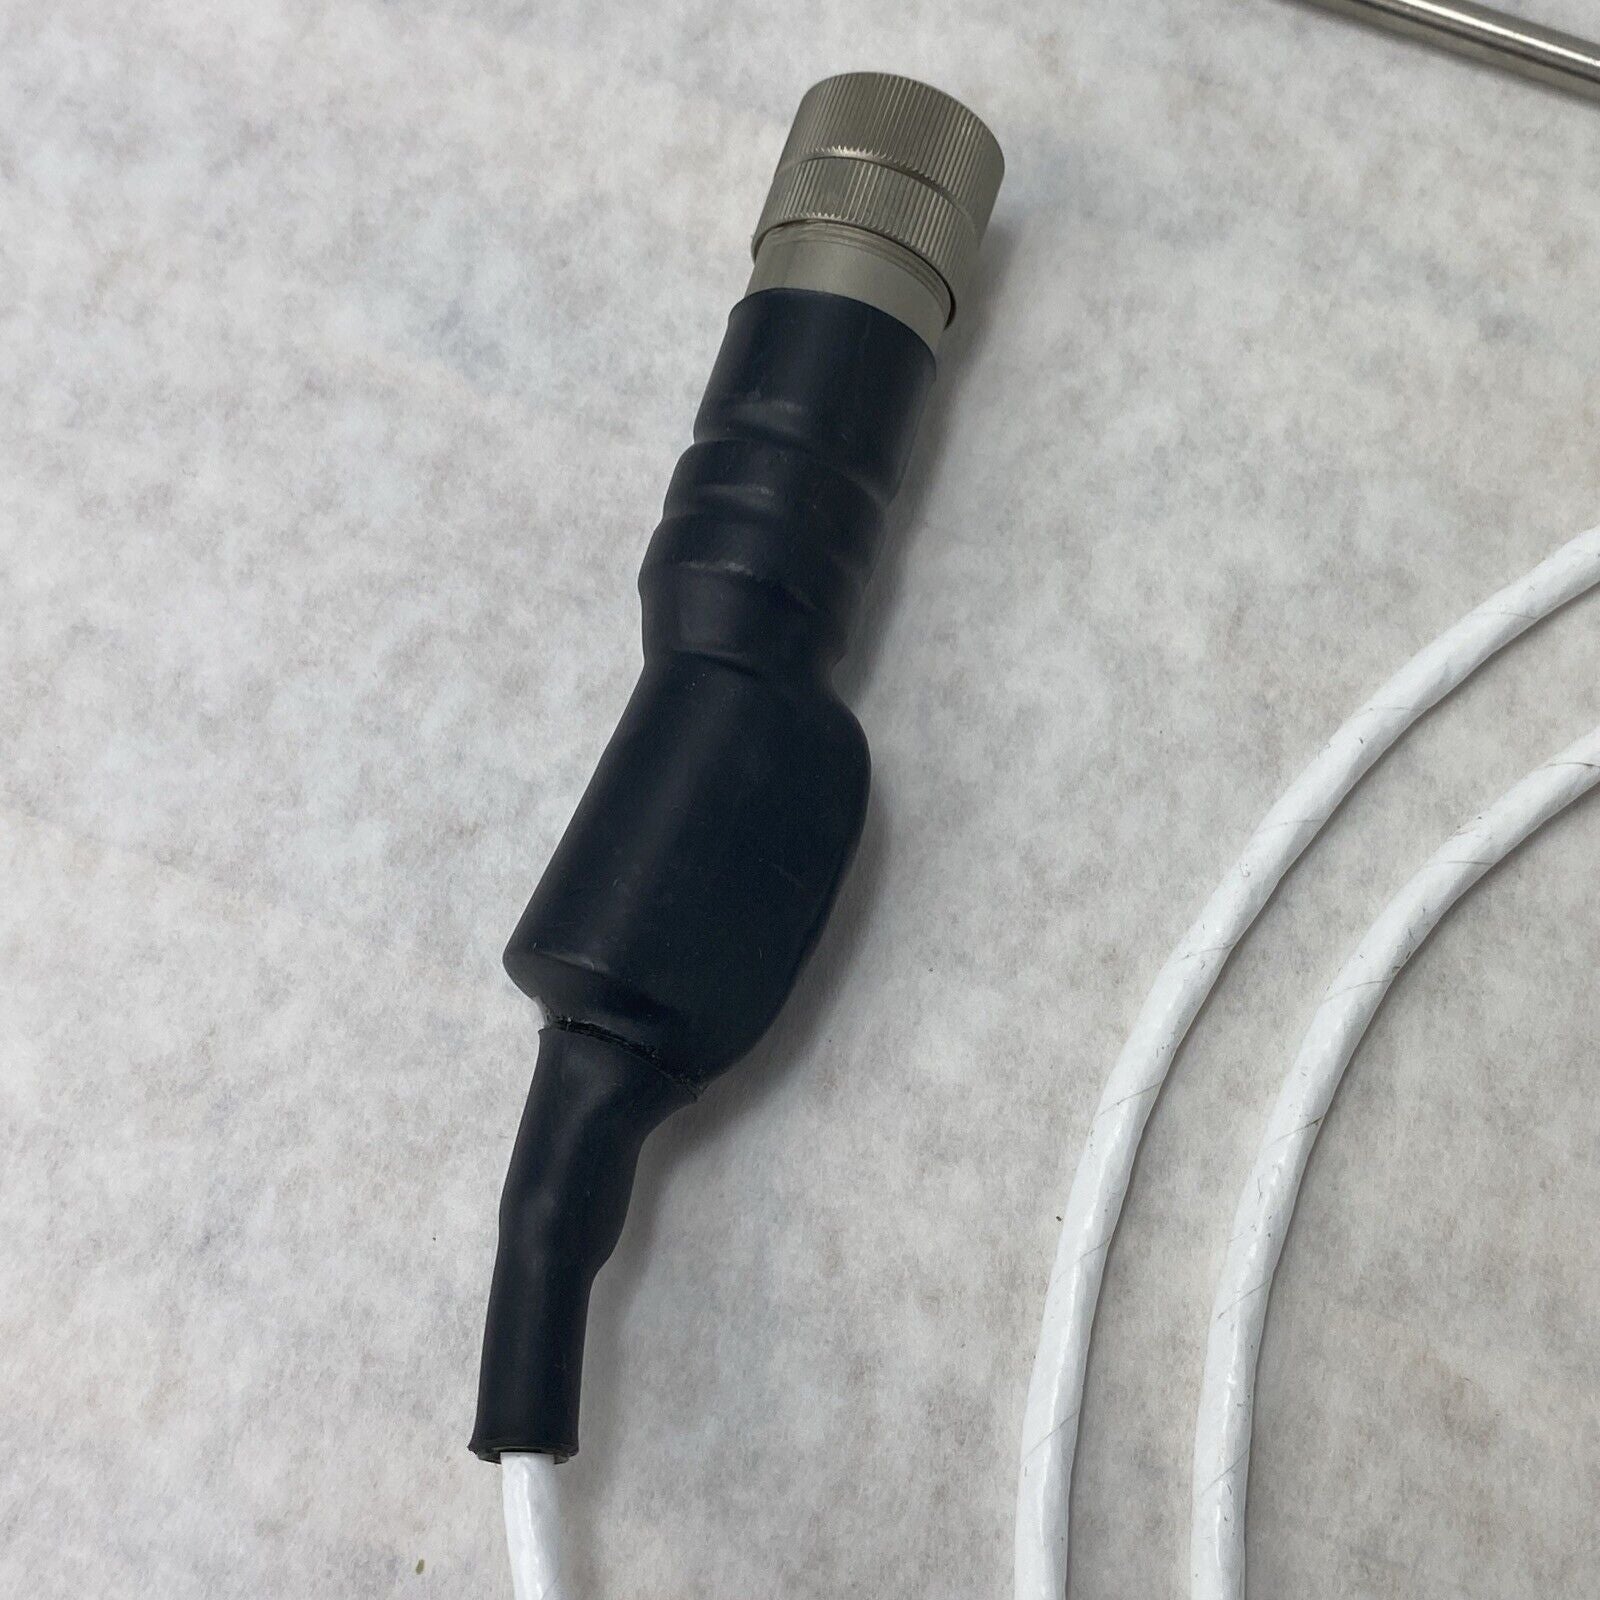 Eppendorf M1294-8013-A Temperature Sensor RTD Cable 5'